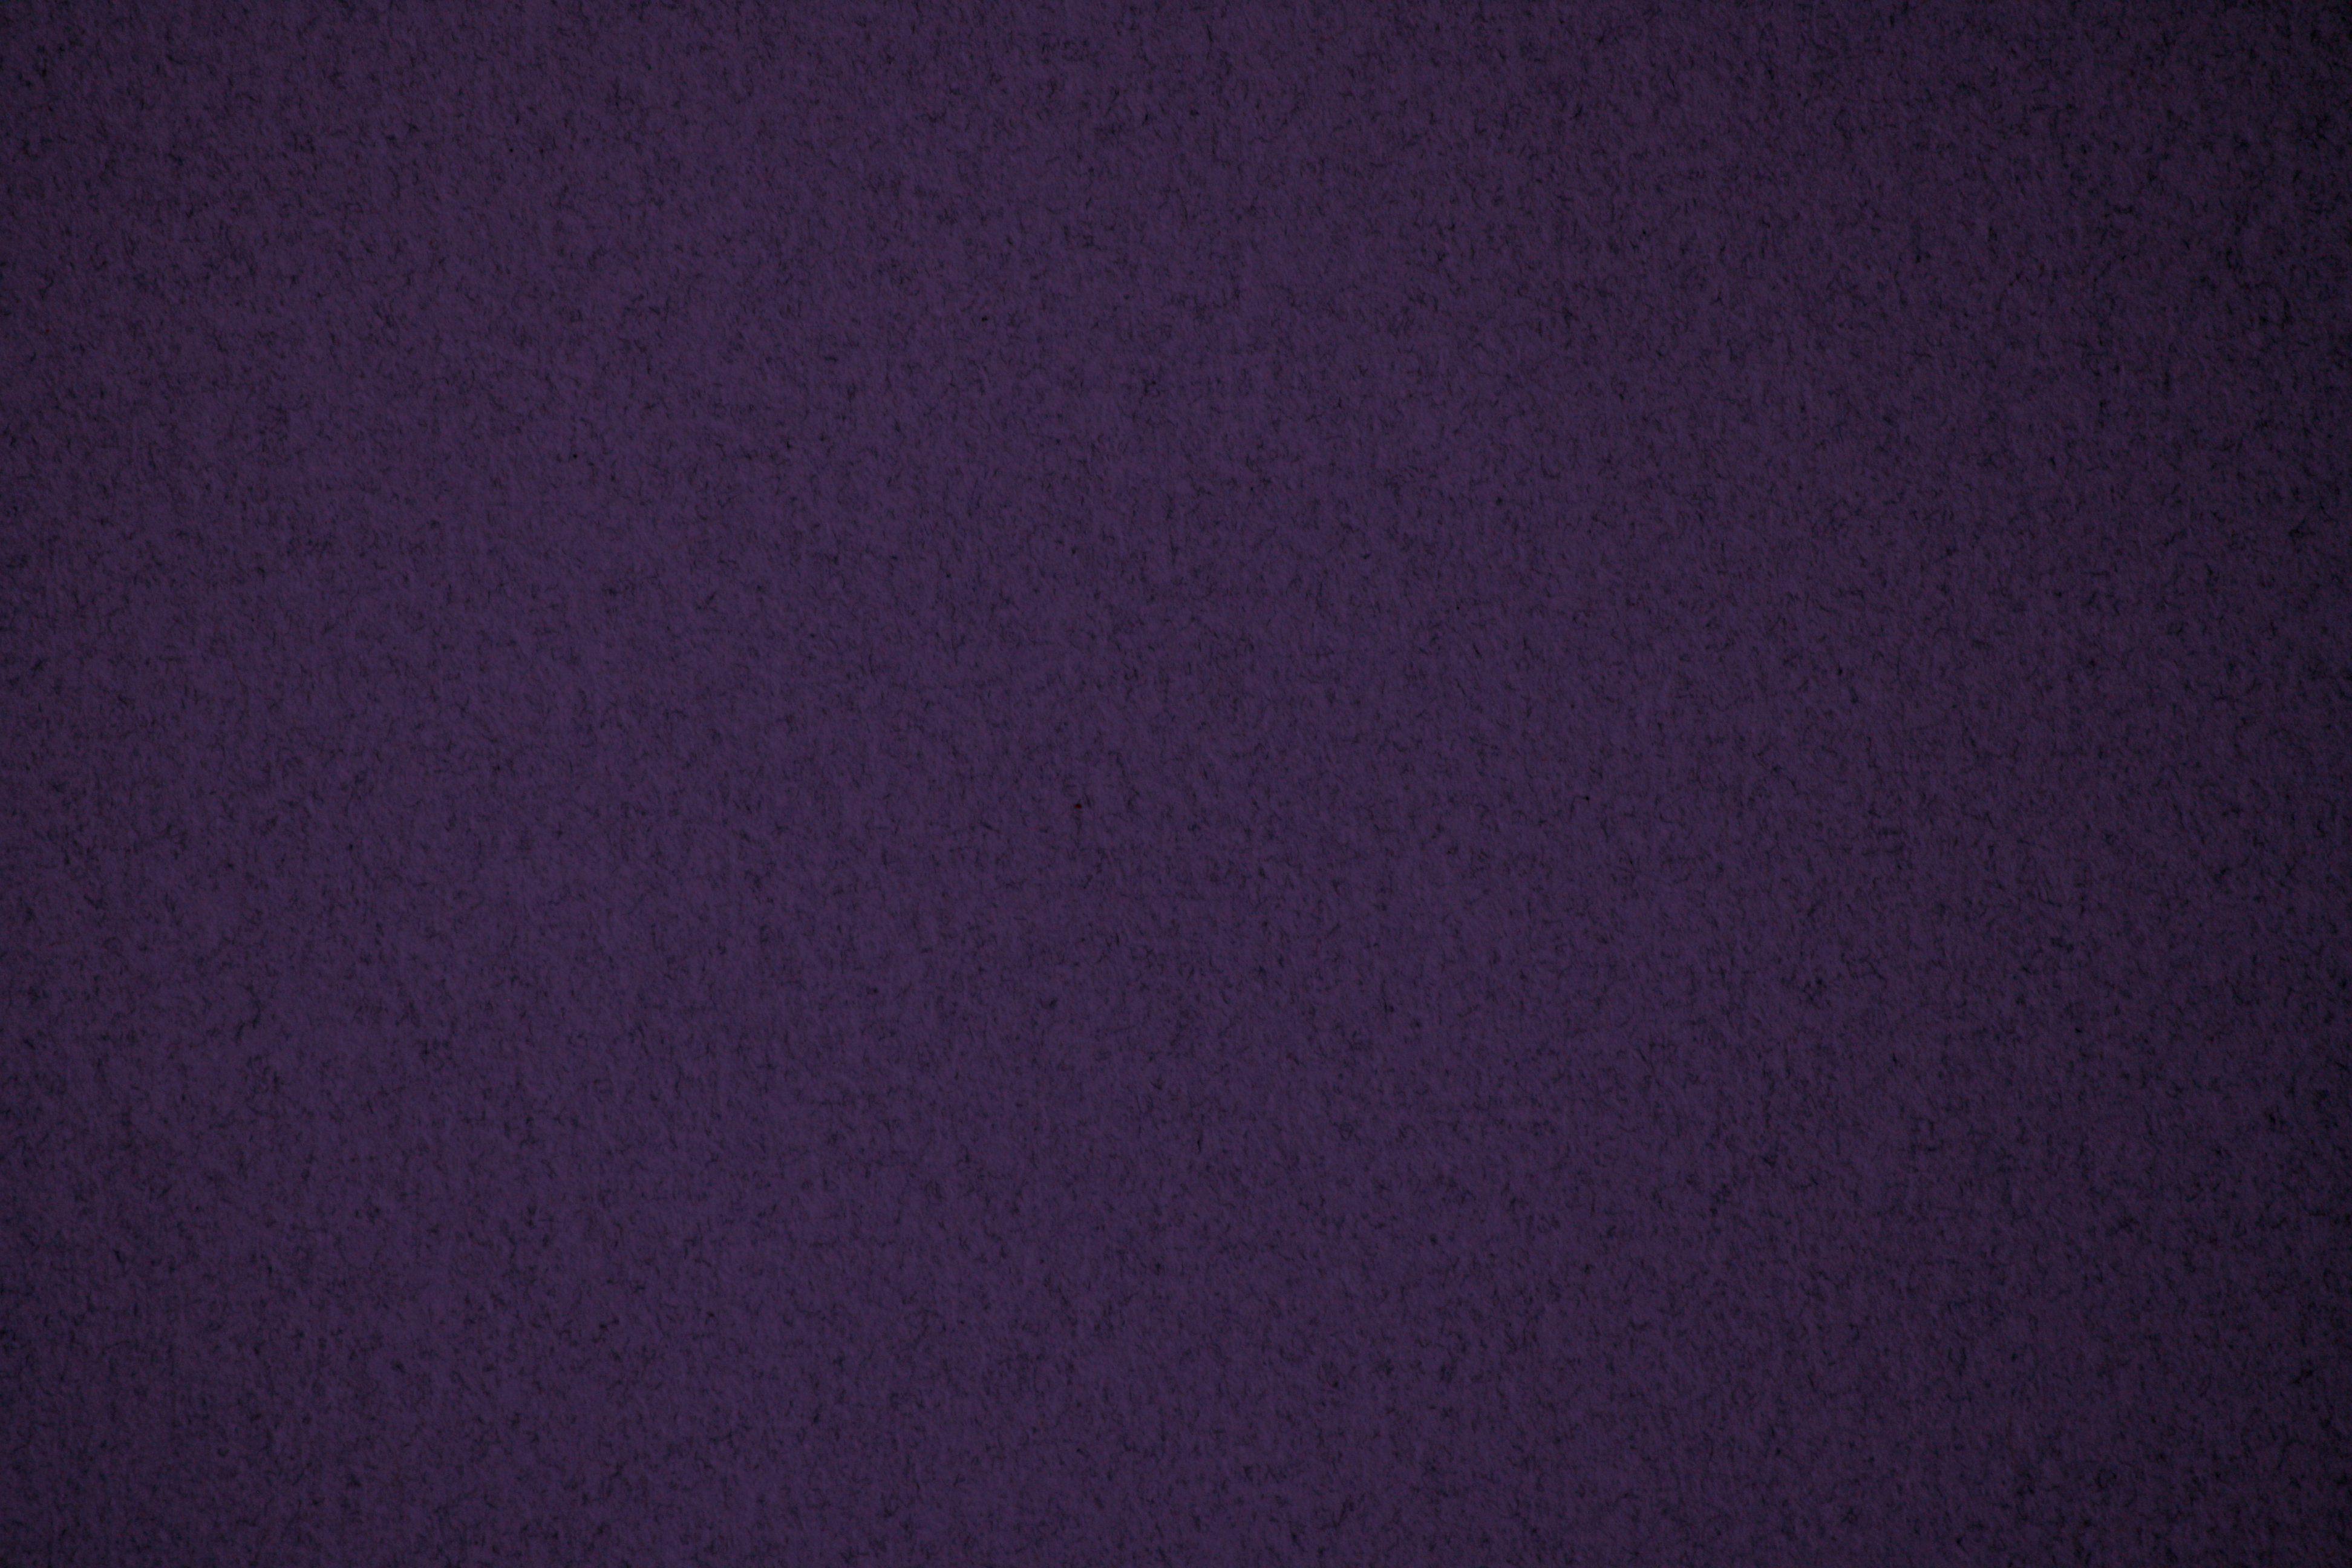 Dark Purple Background Online OER